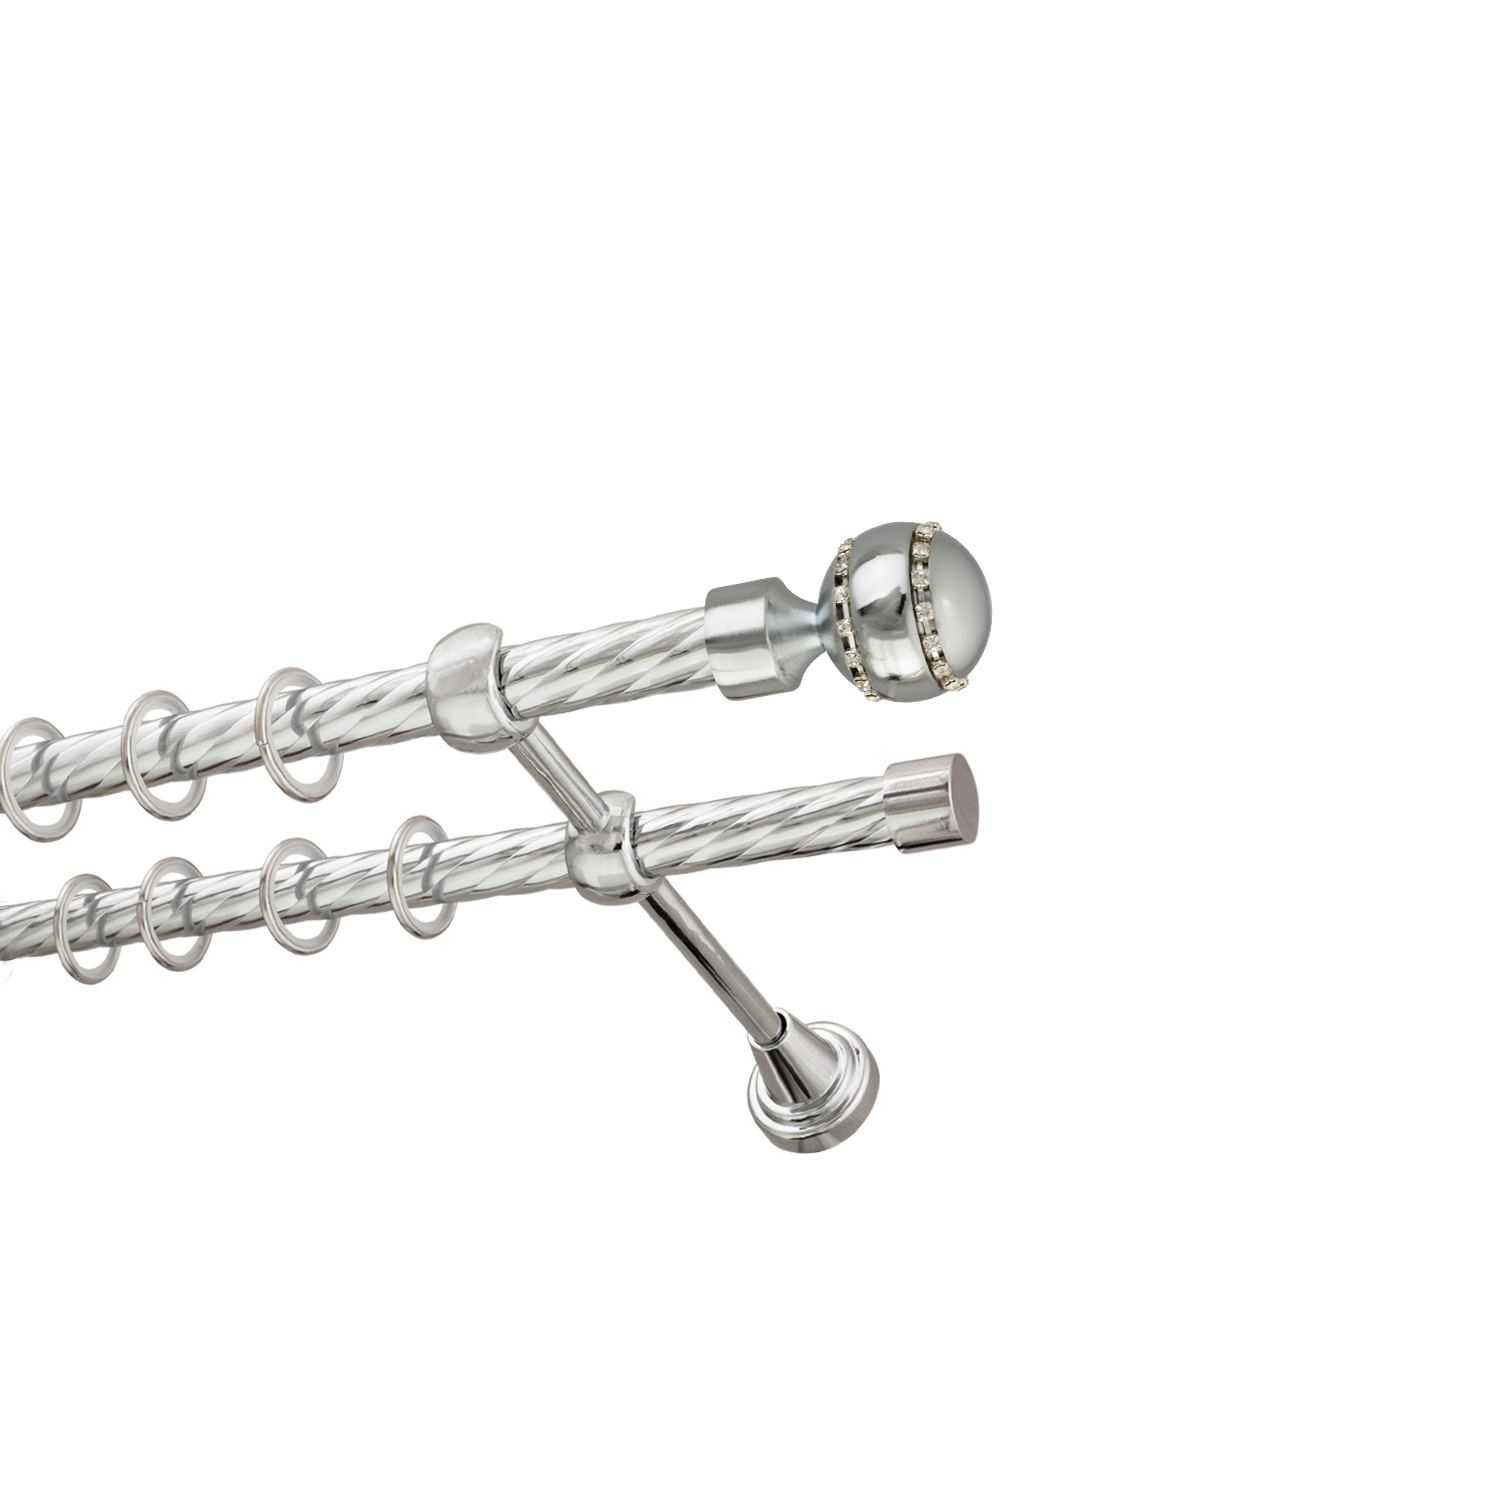 Металлический карниз для штор Модерн, двухрядный 16/16 мм, серебро, витая штанга, длина 240 см